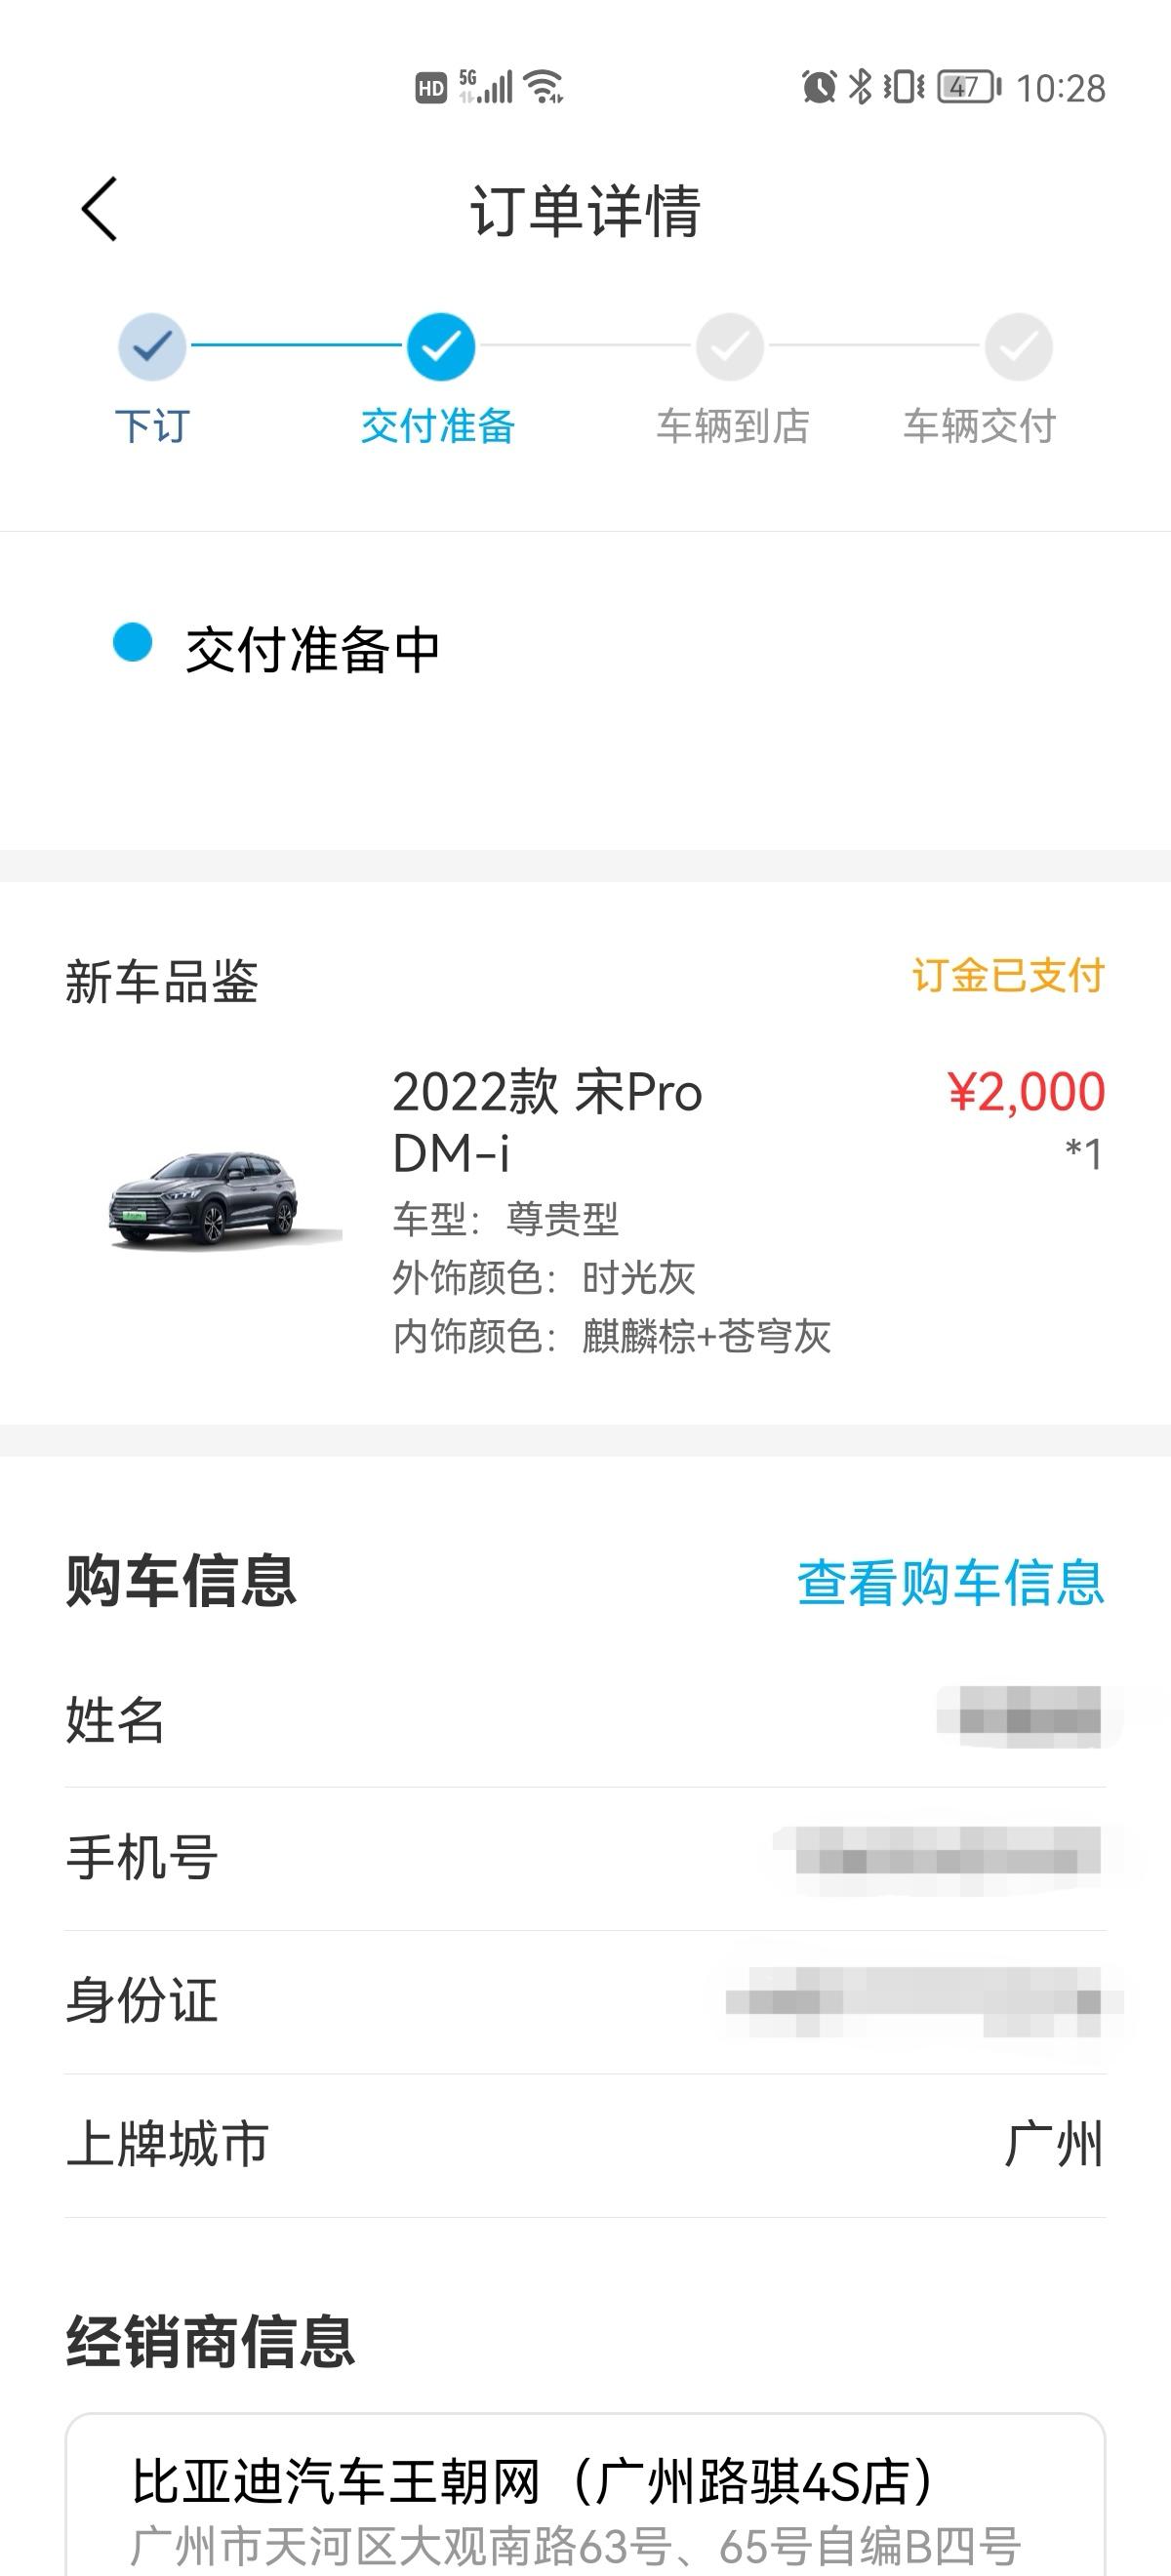 比亚迪宋Pro DM-i 坐标广州，1月8日下订，刚显示交付准备中，要准备多久才能提车